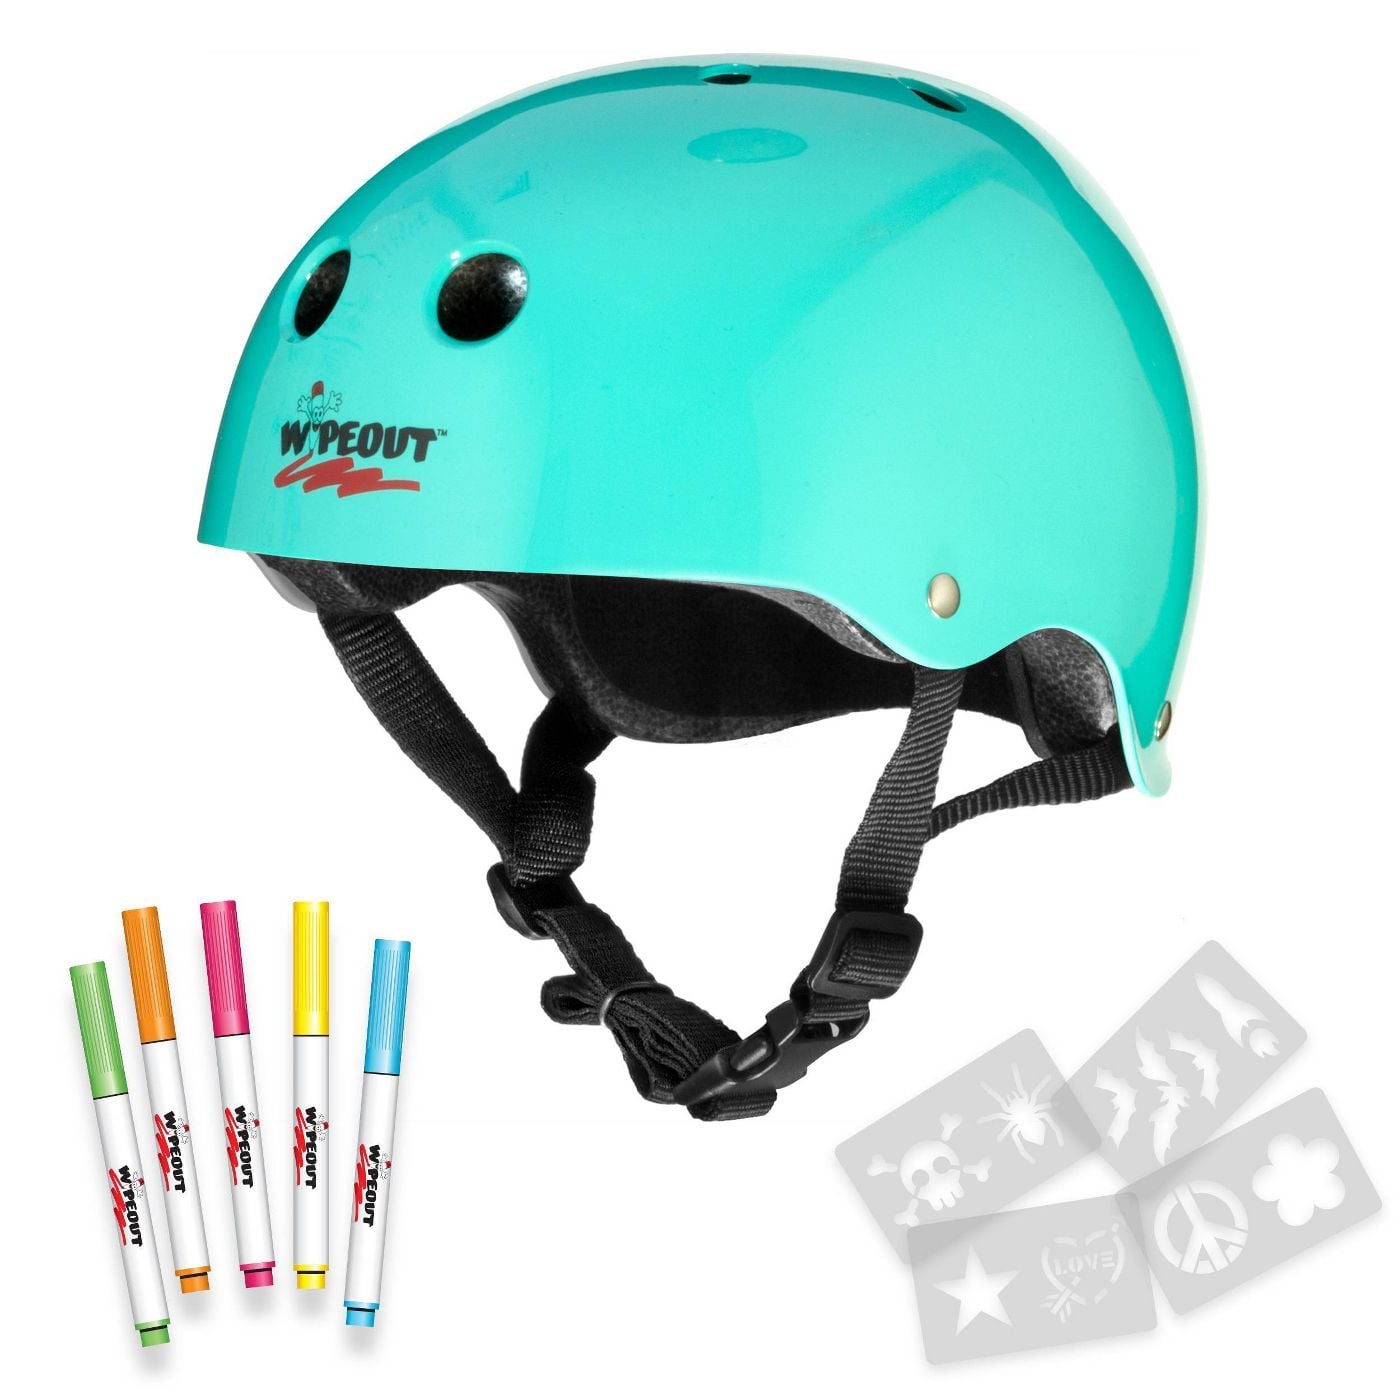 Details about   Kids Bike Helmet Cycling/ Adjustable Skateboard Helmet for Safety Skate Helmet 